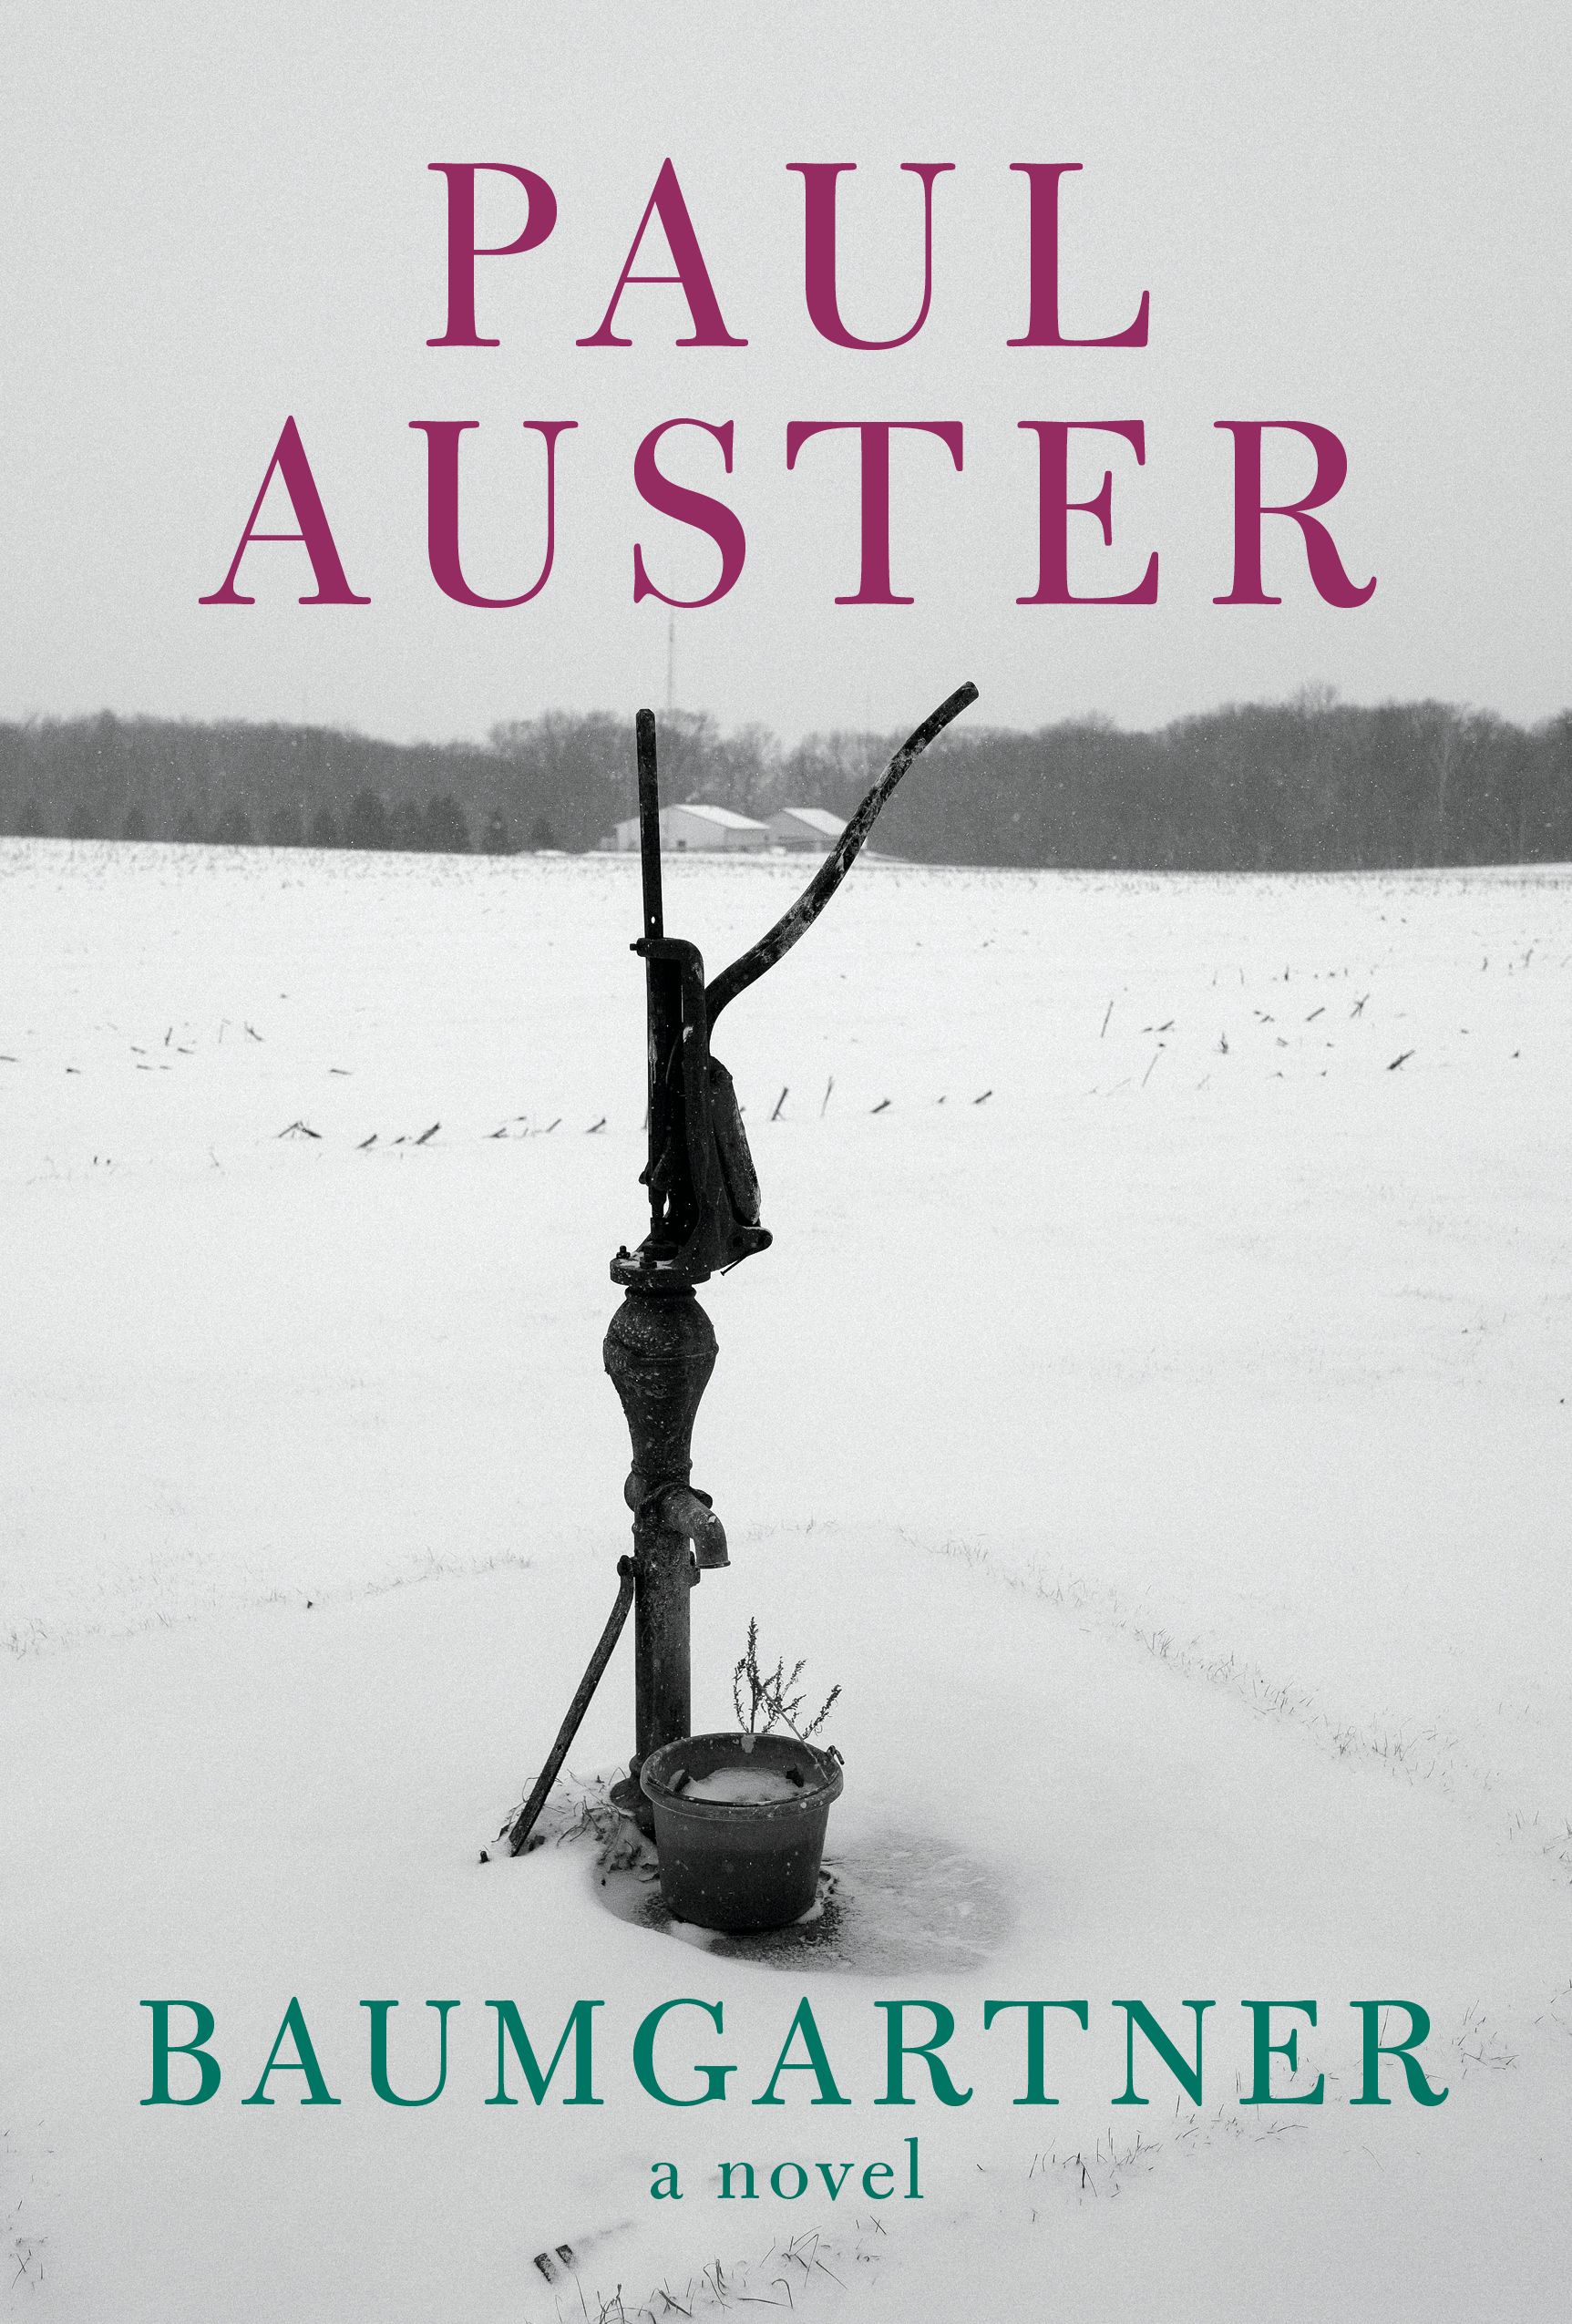 Paul Auster - Wikipedia